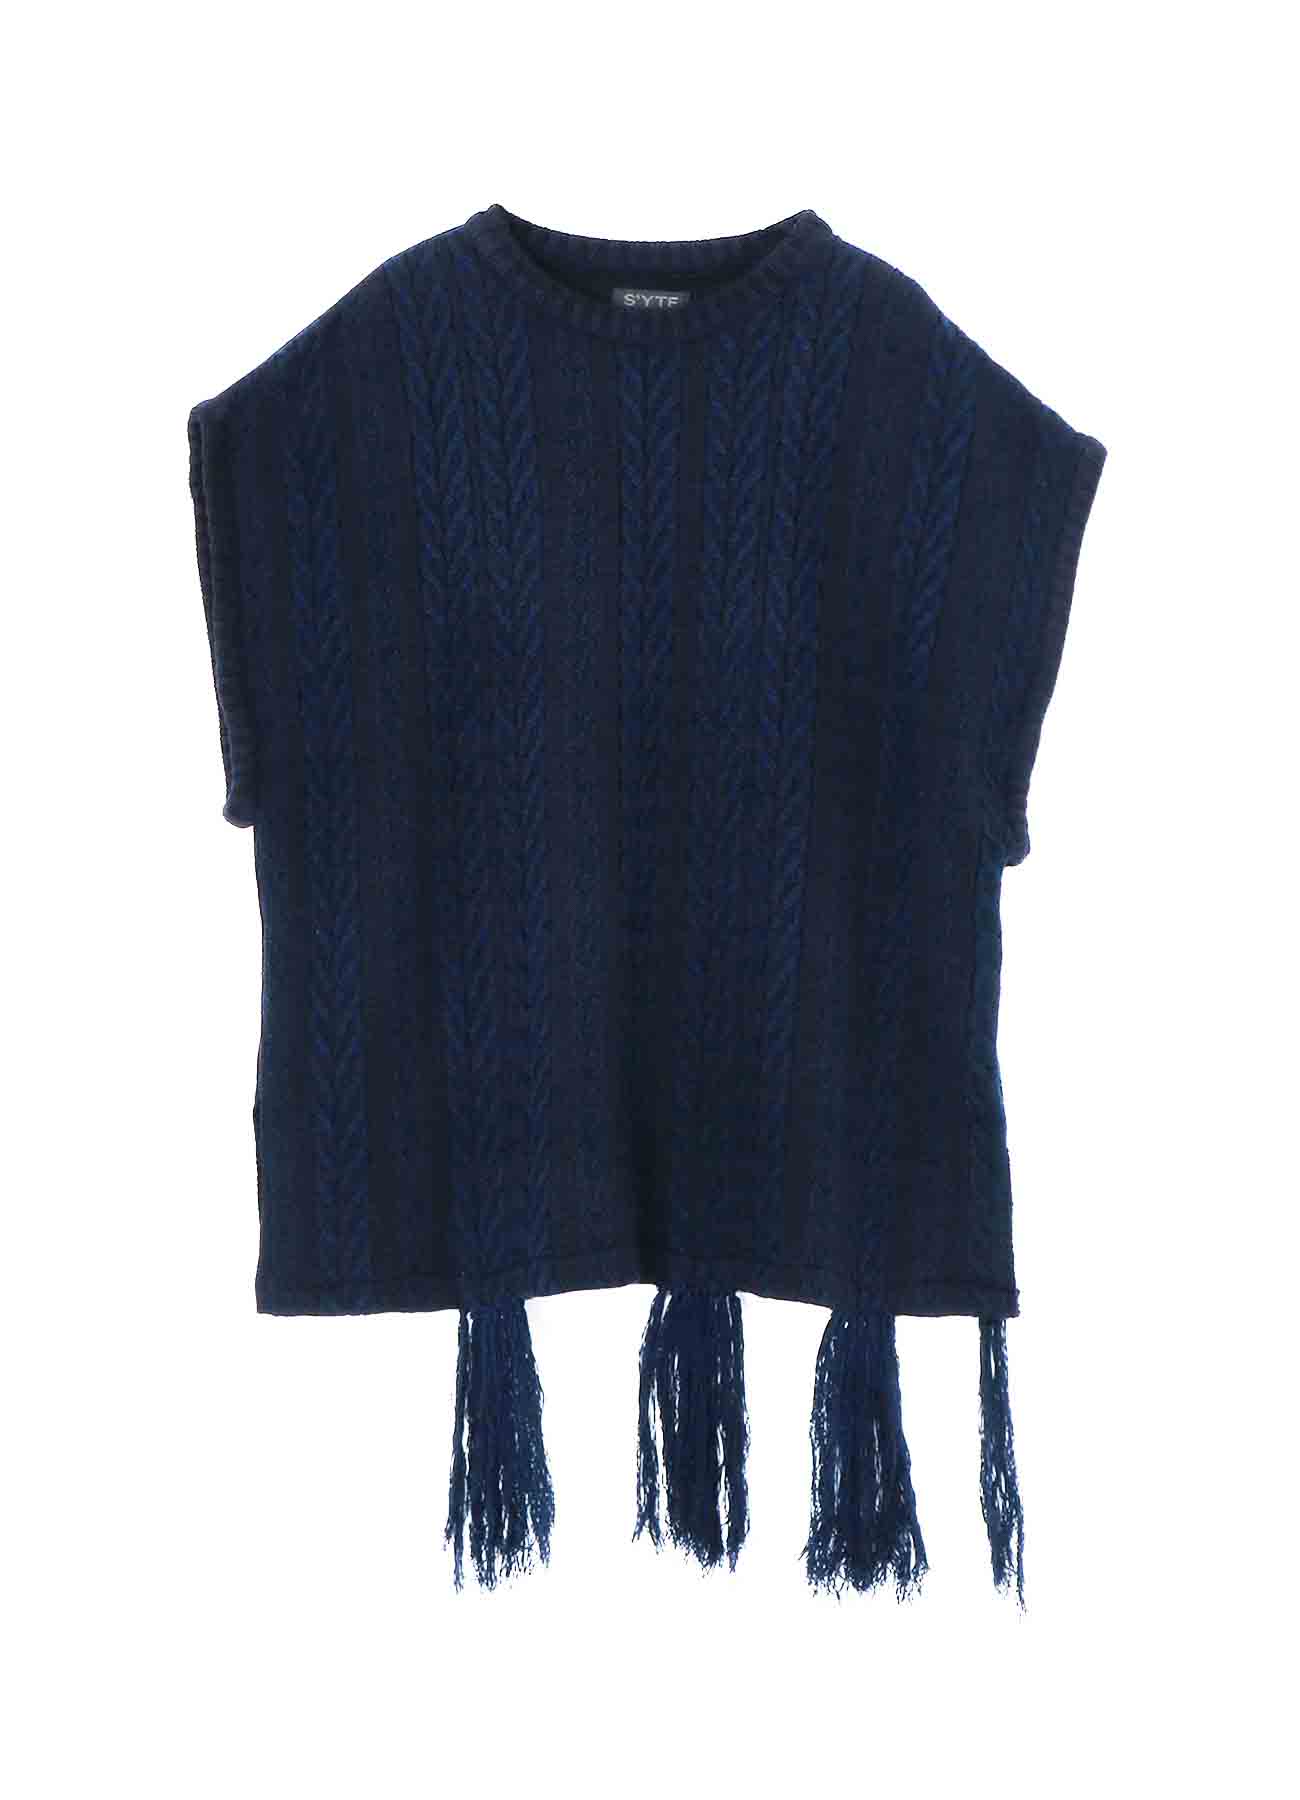 Jacquard knit Vest with Tasseled Hem and Color Scheme Design